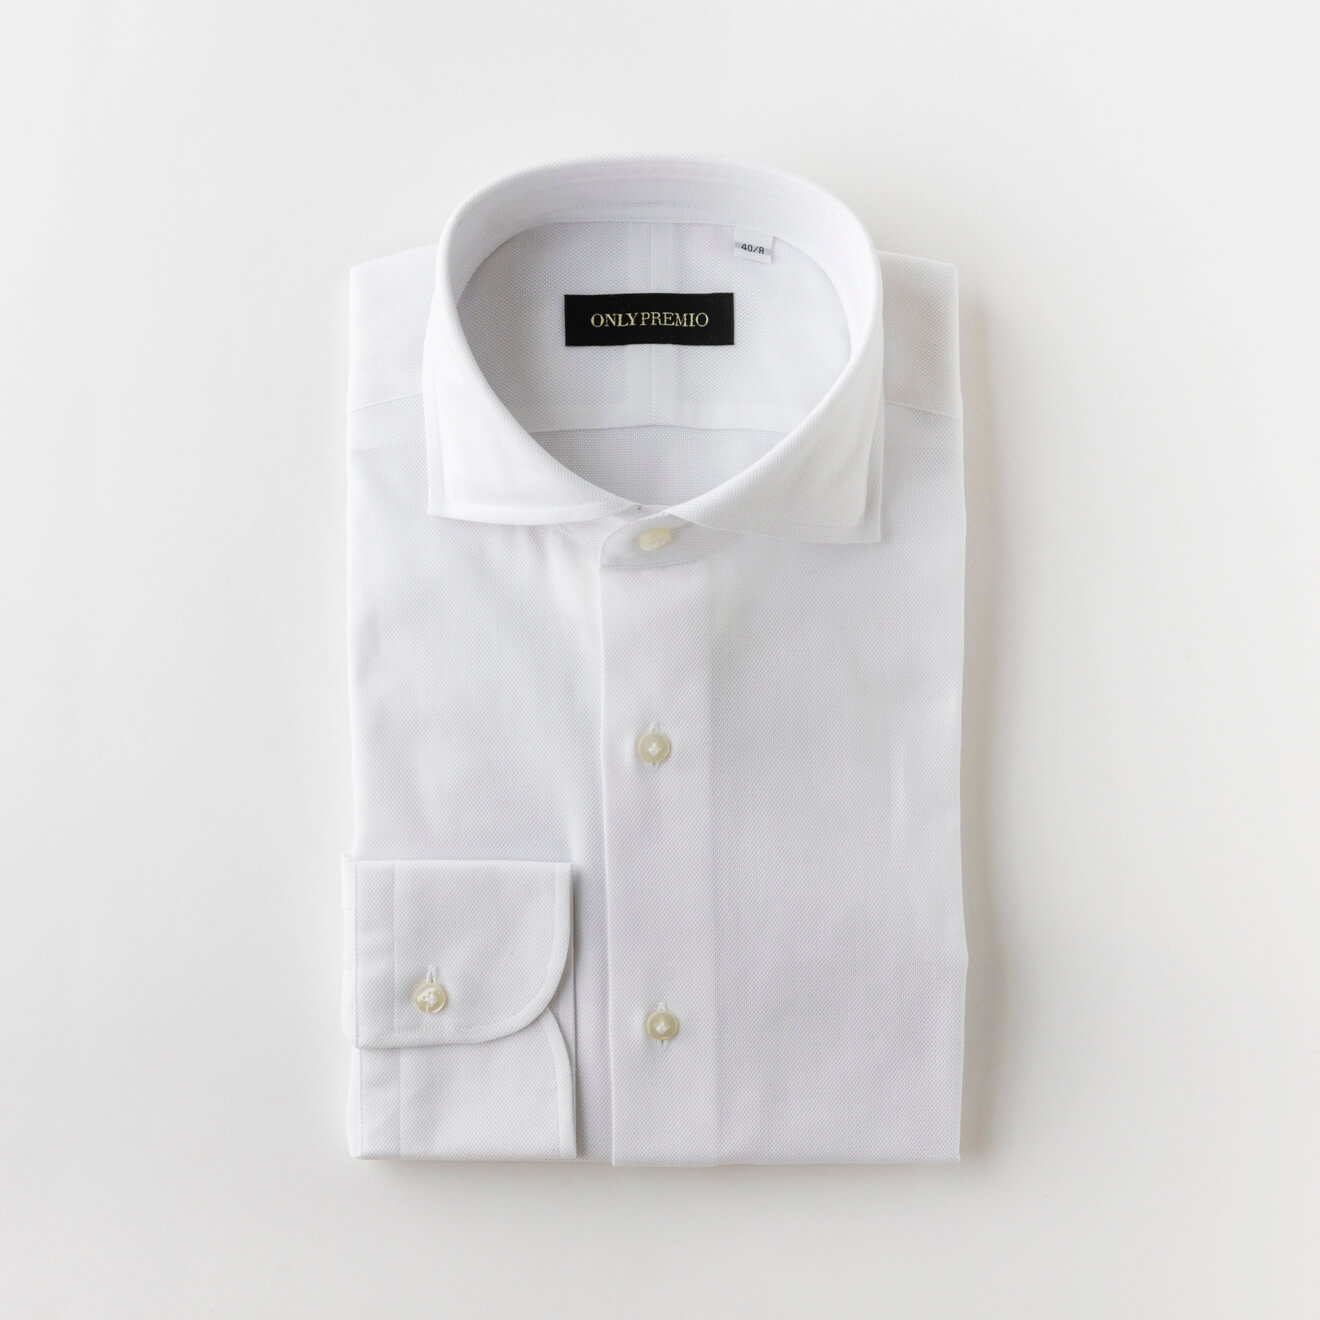 【100番手双糸】 EASY CARE WHITE からみ織りシャツ